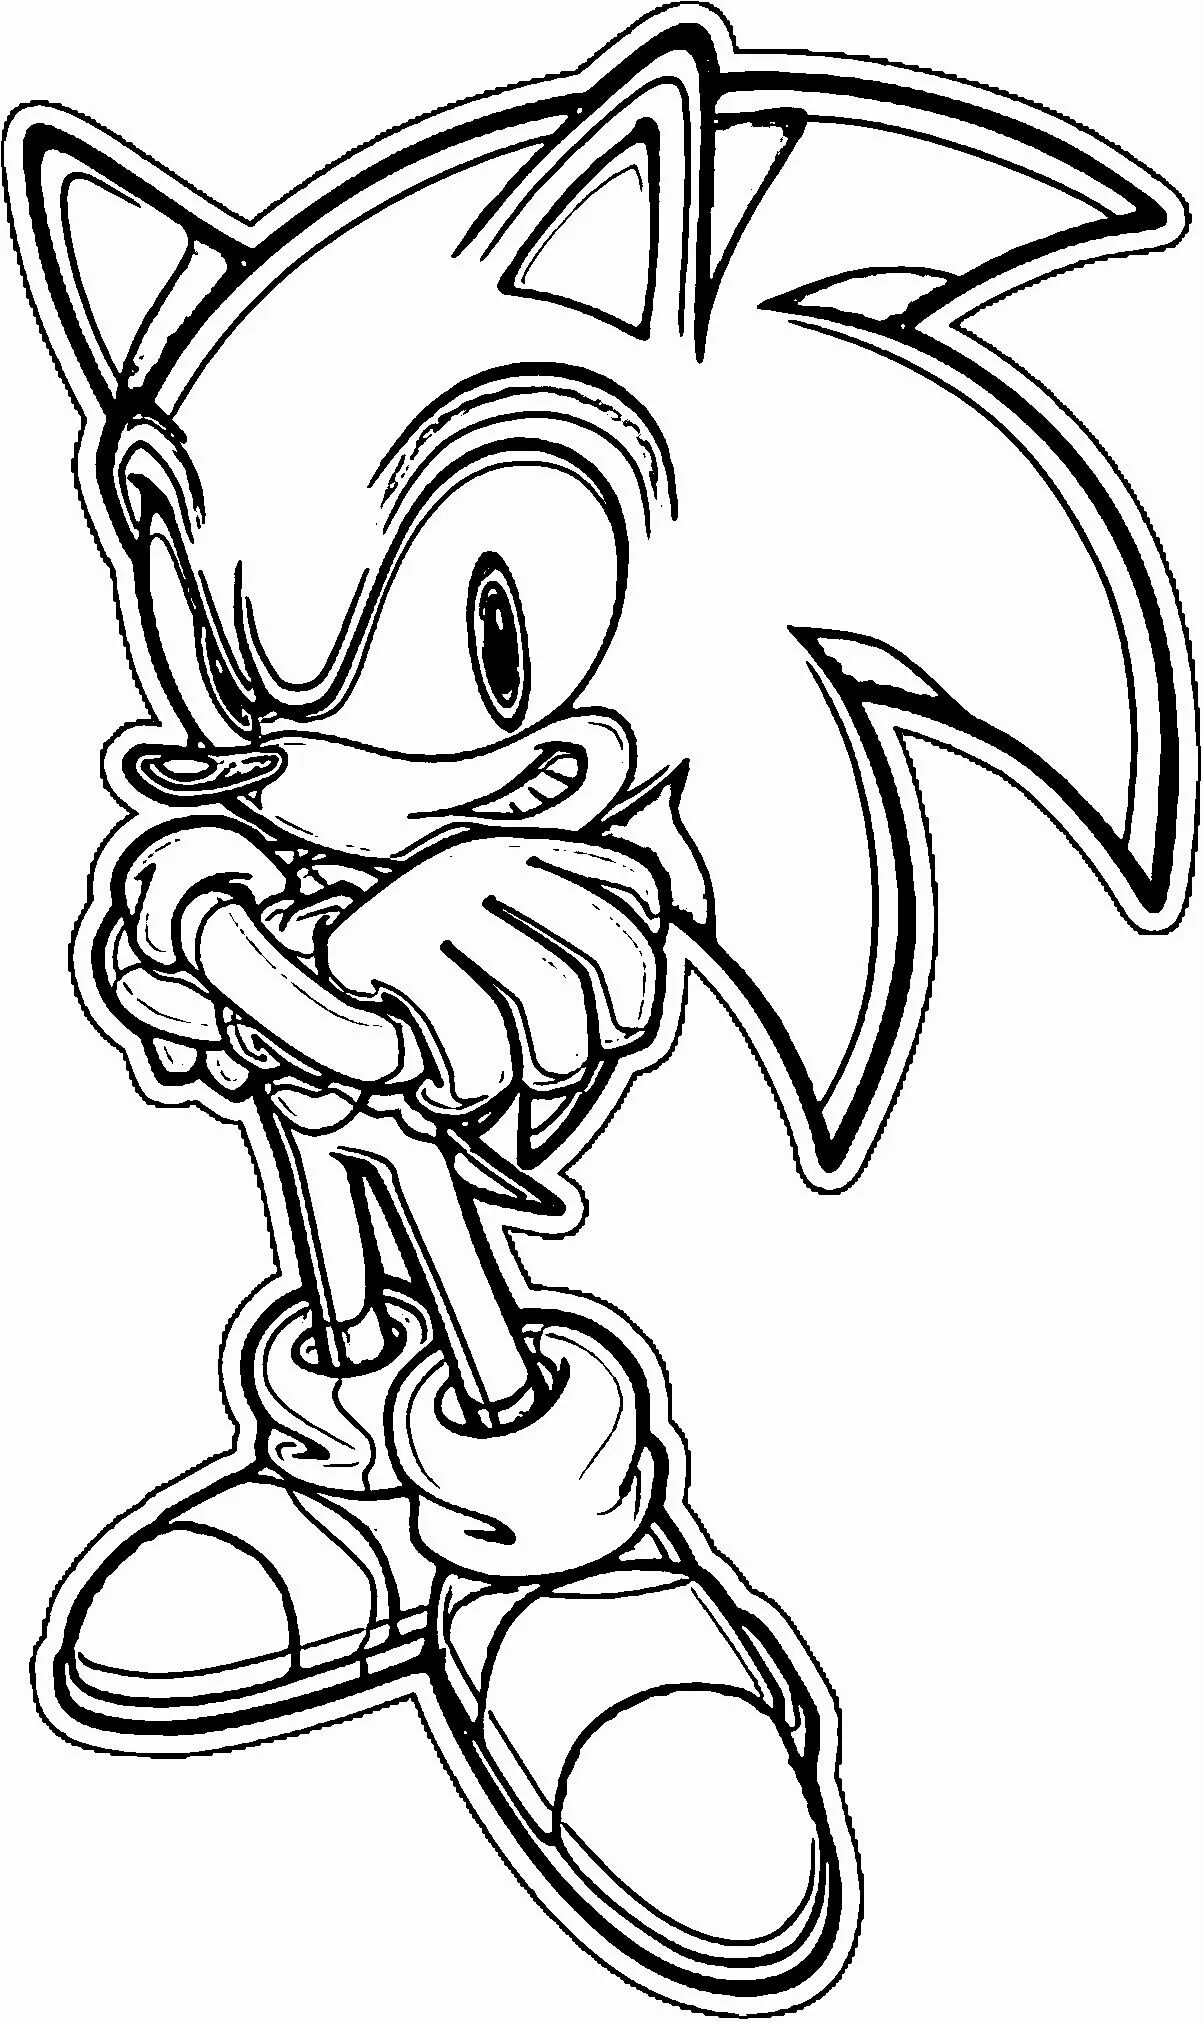 Sonic shredder #5